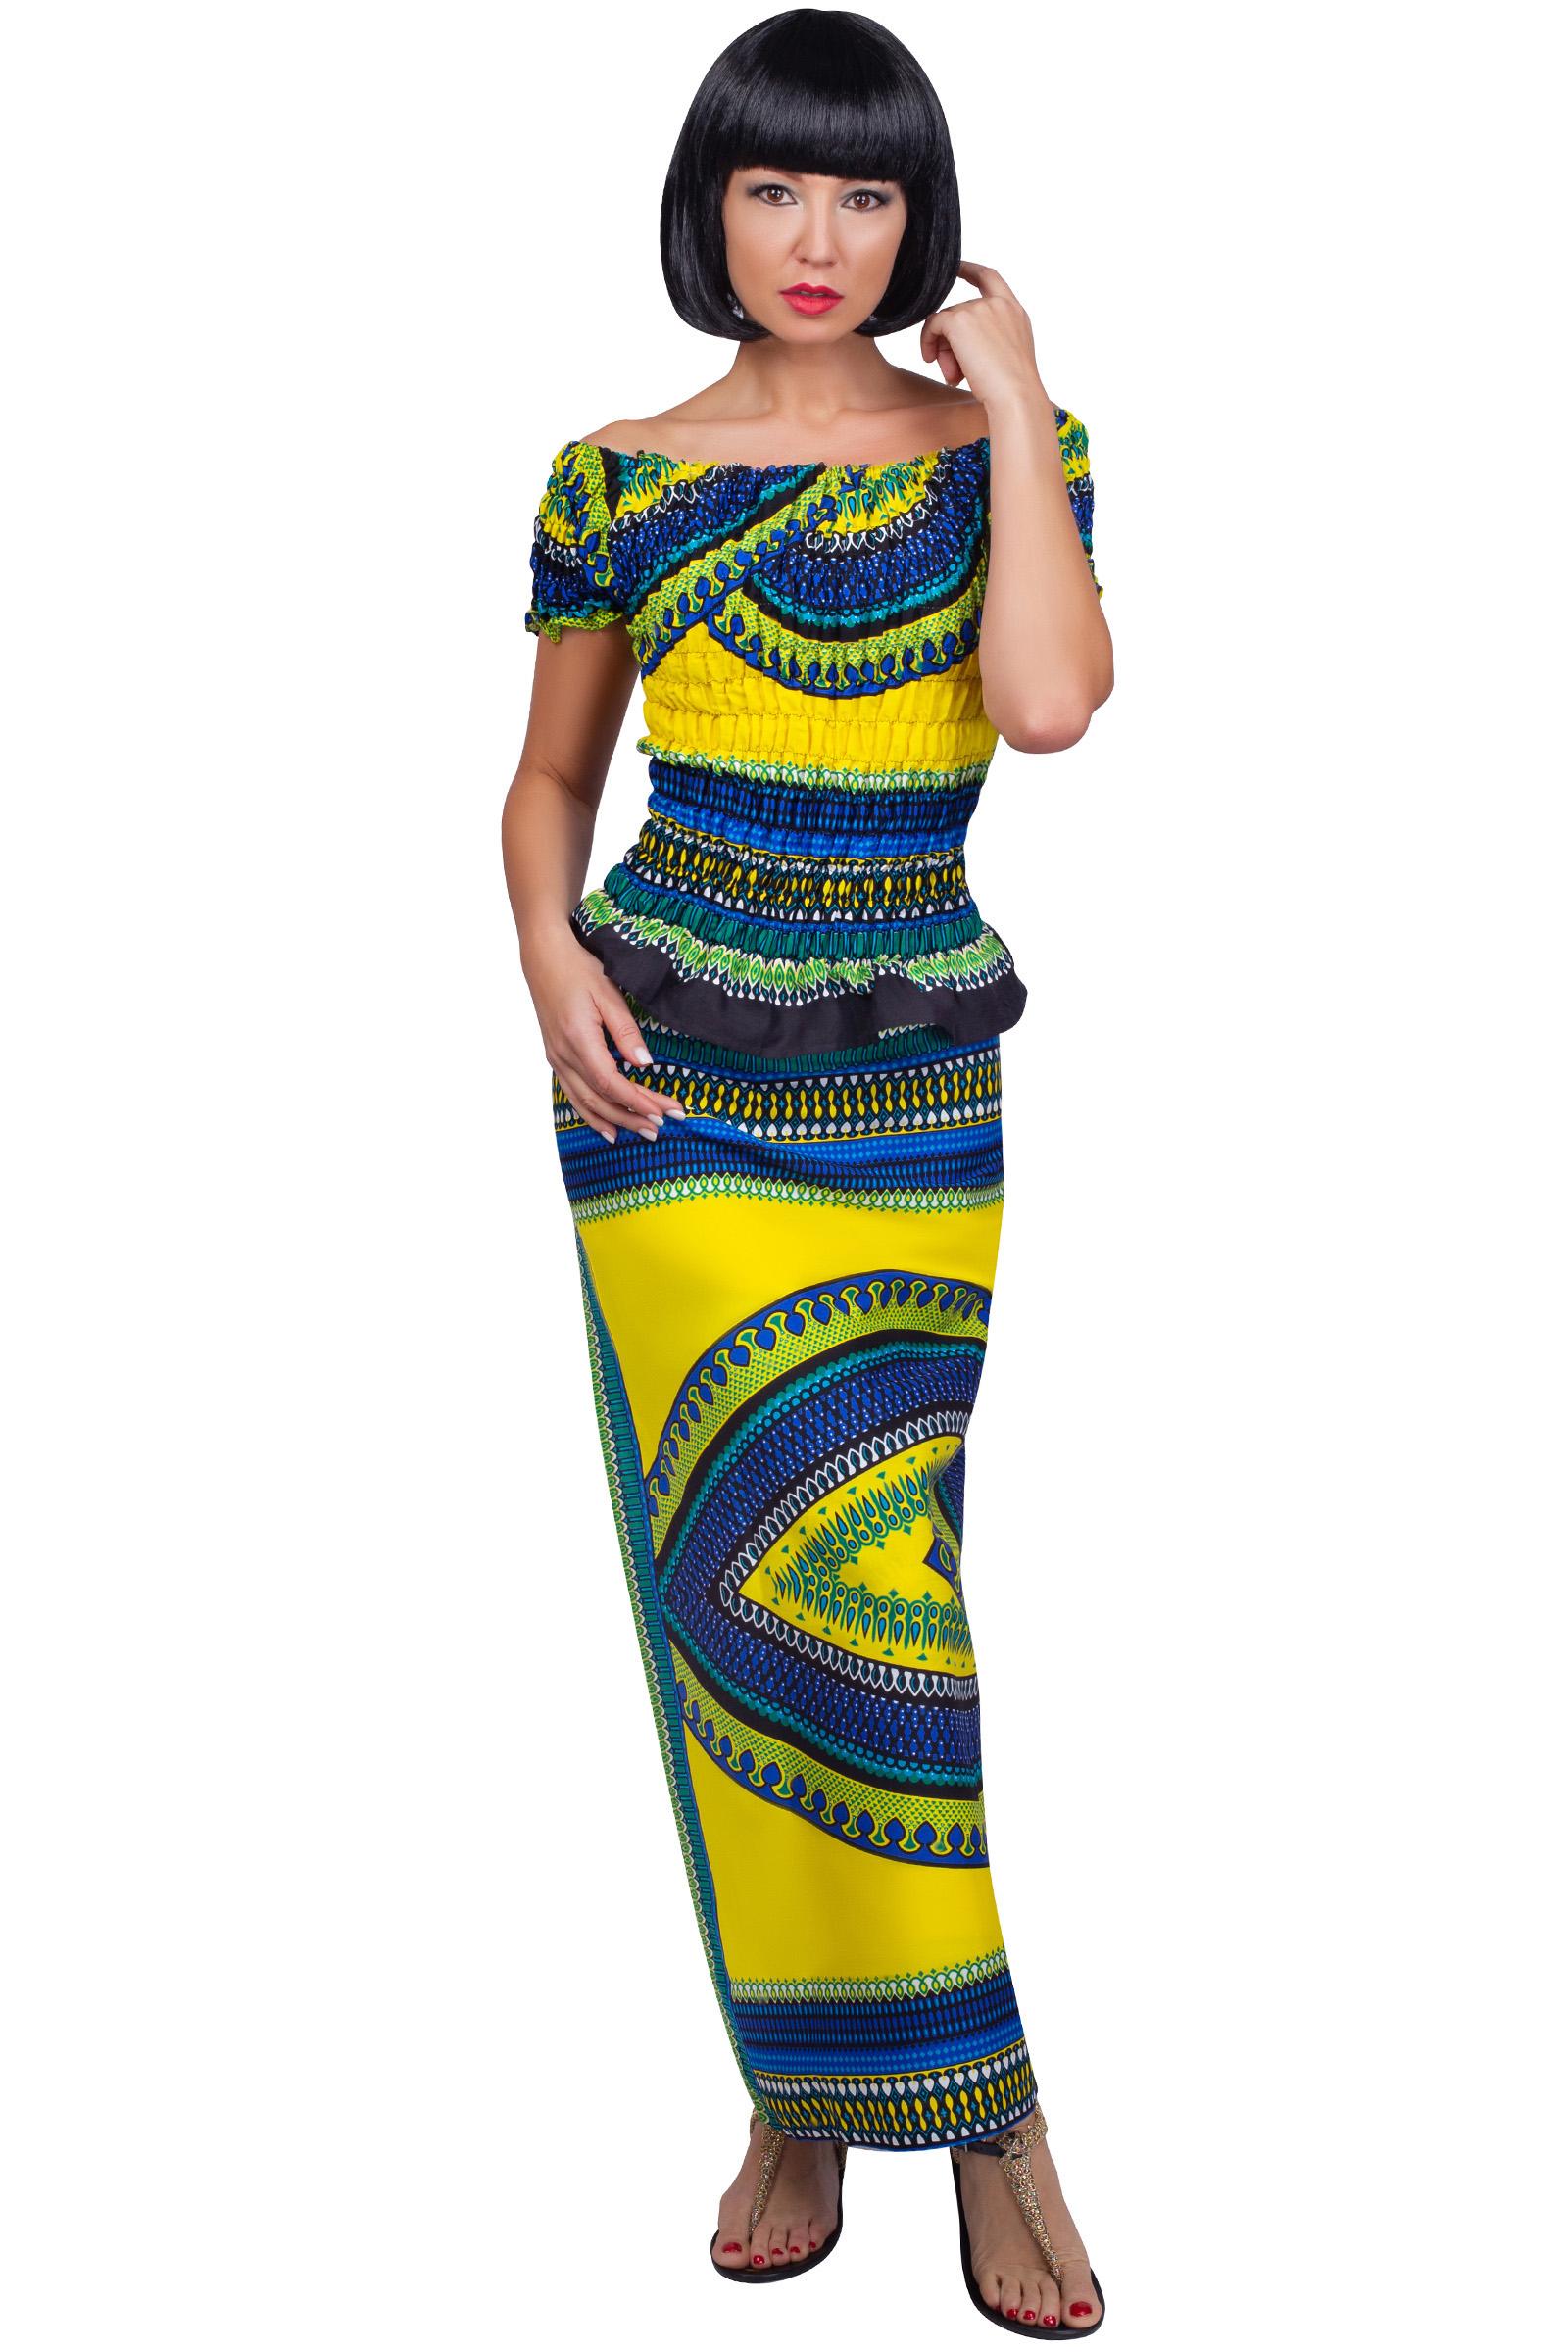 Африканский стиль в одежде: цвета, аксессуары, афро тренды